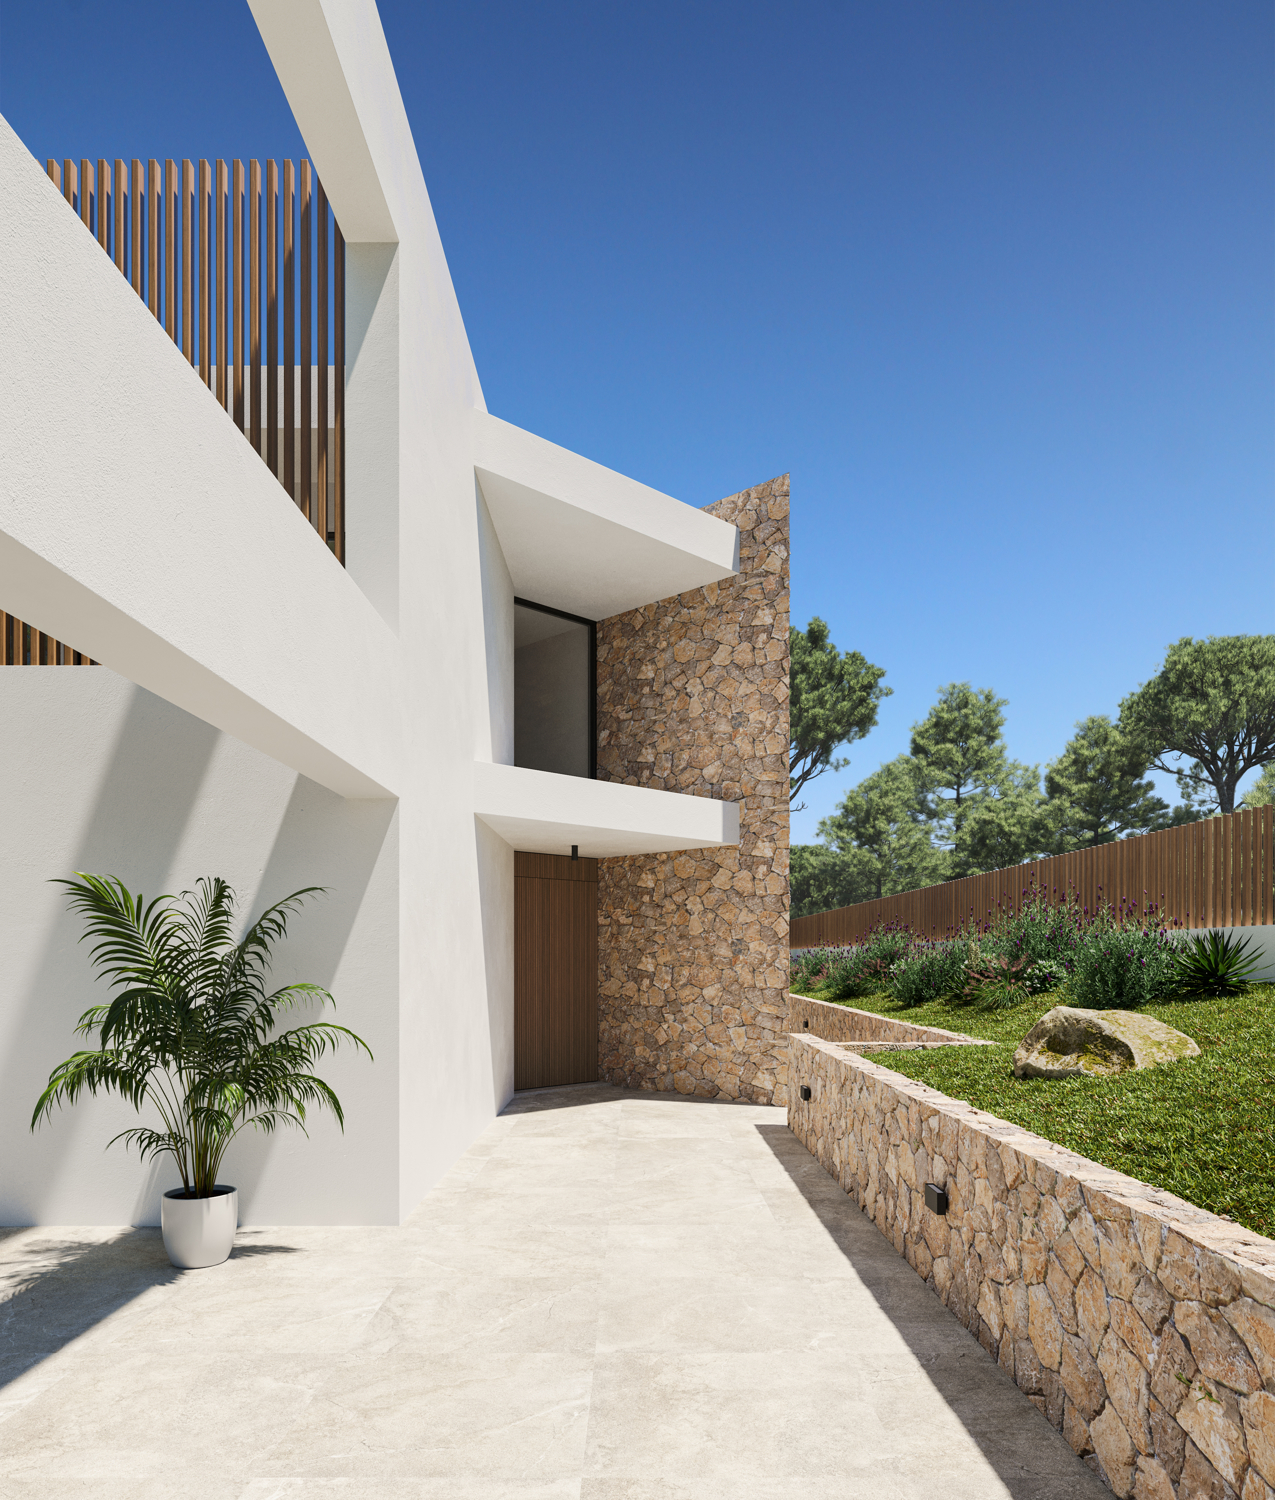 Villa project under construction in Nova Santa Ponsa